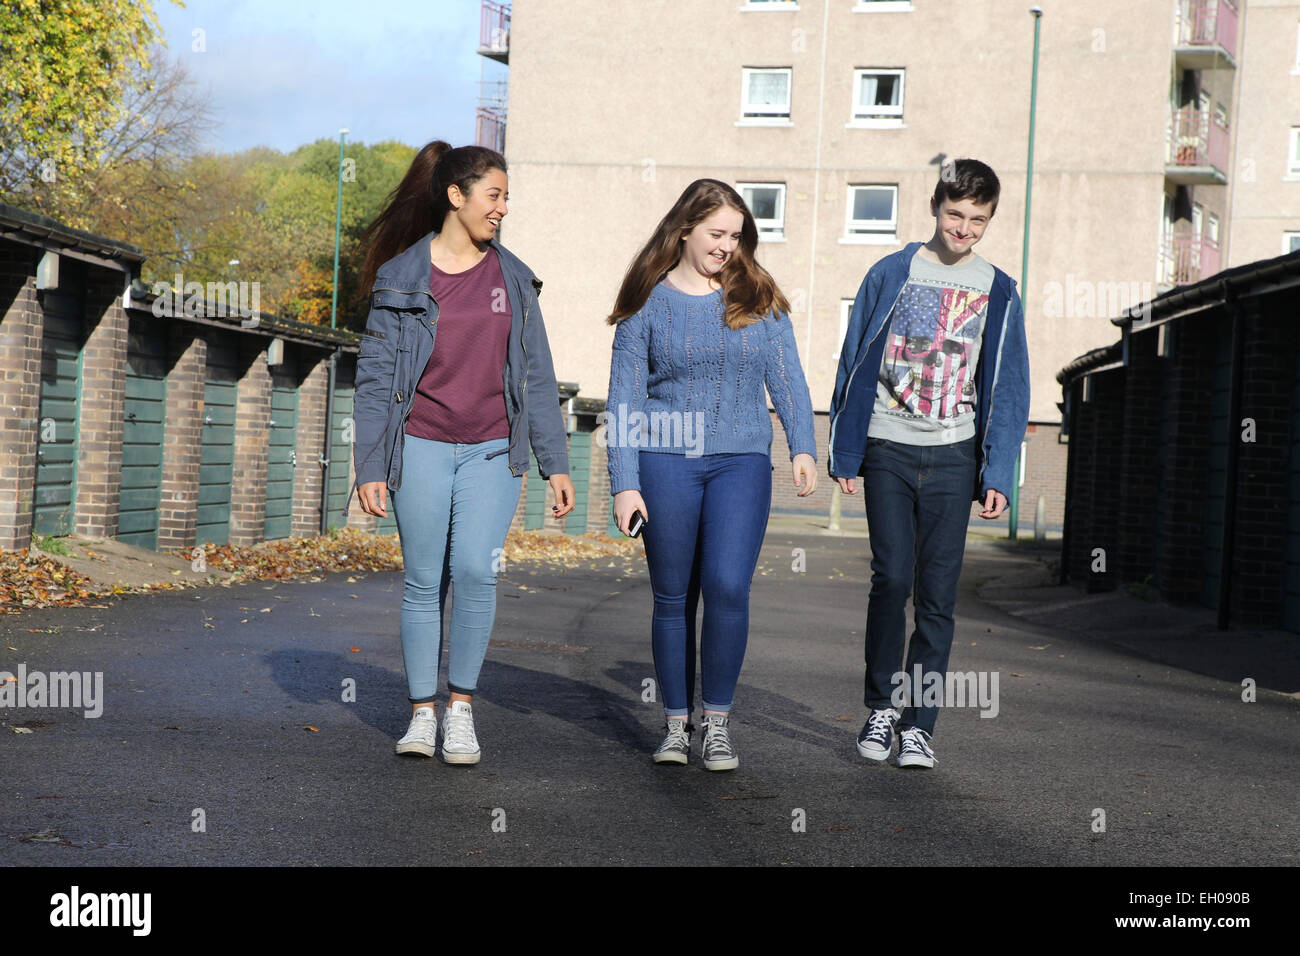 Anzeigen von Teenagern zu Fuß - Modell veröffentlicht Stockfoto